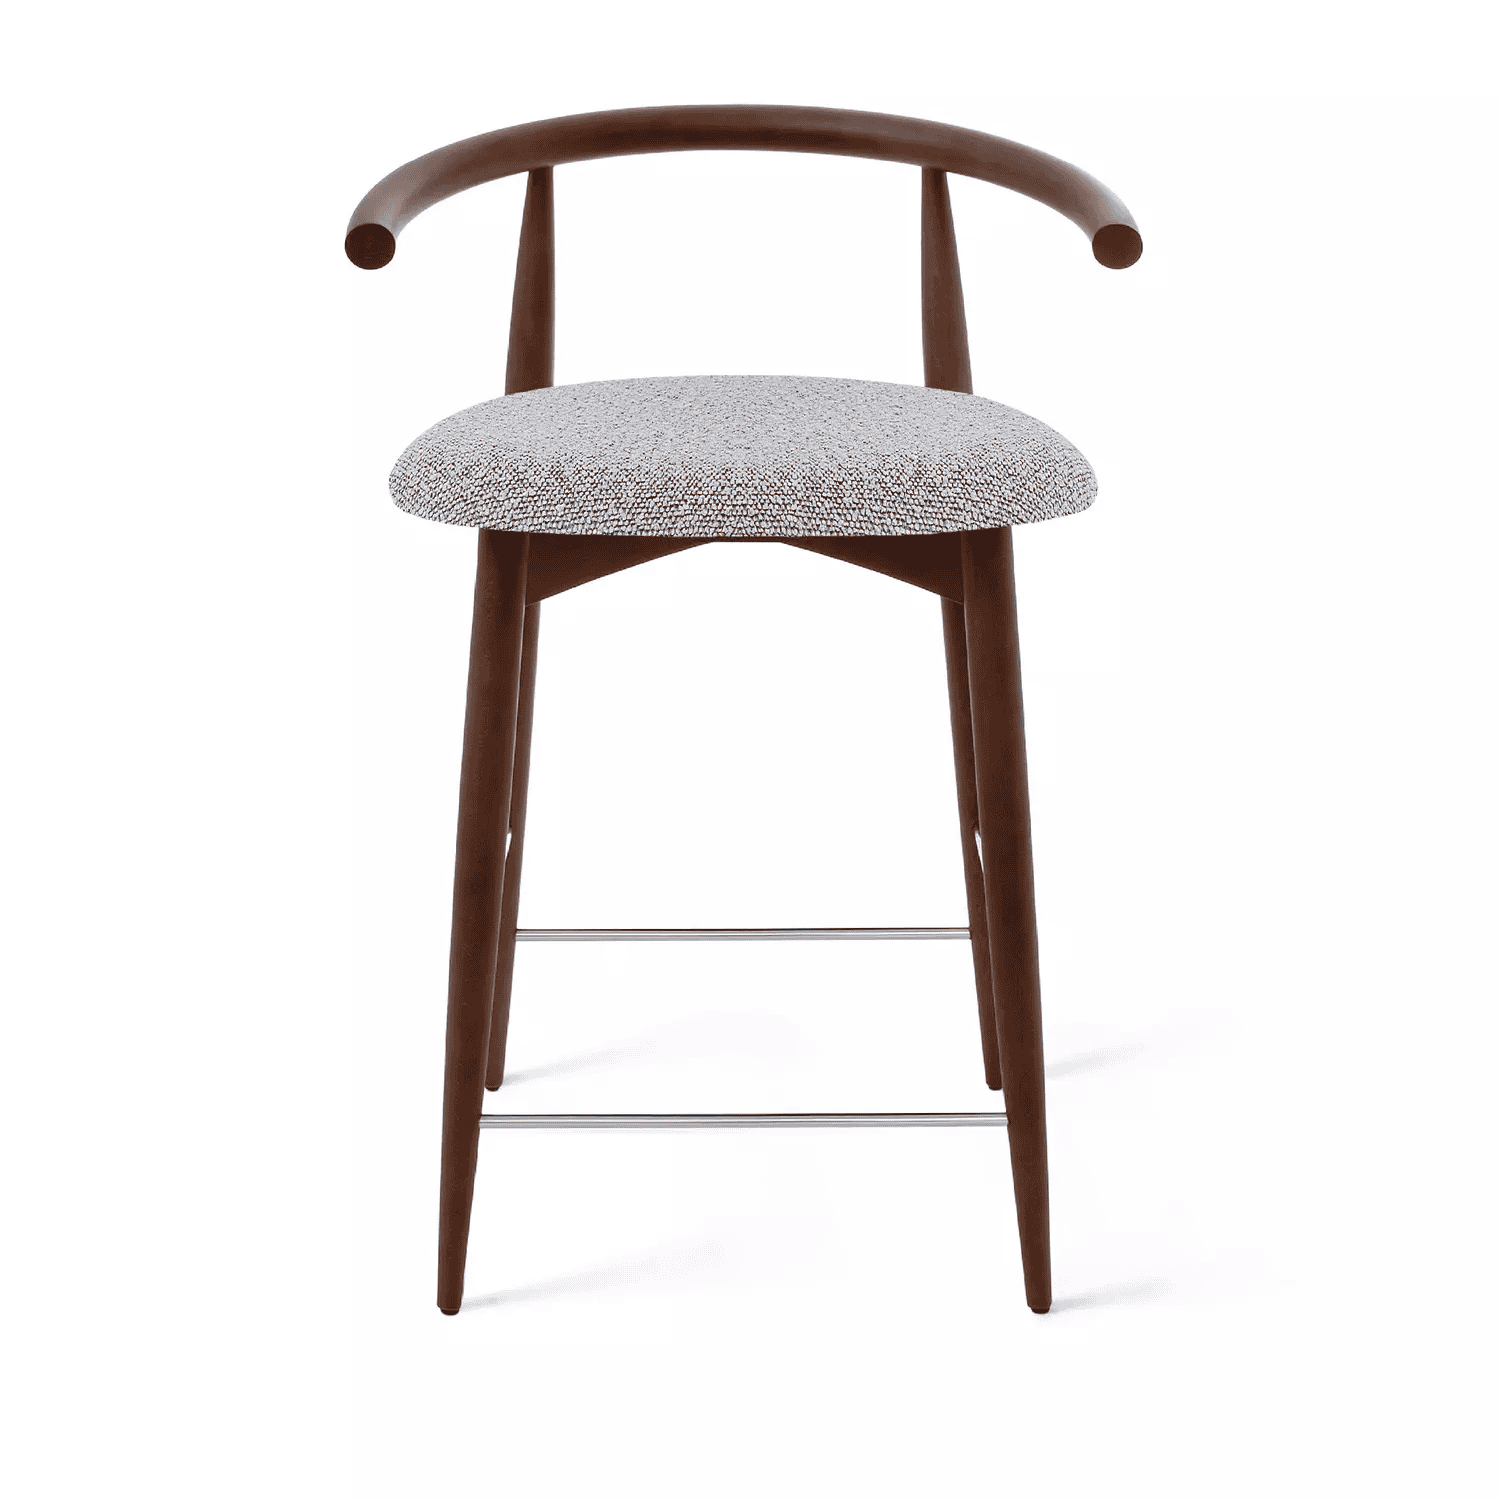 Полубарный стул Fabricius, натуральный бук, тонированный коричневым лаком, шенилл серый - изображение 1